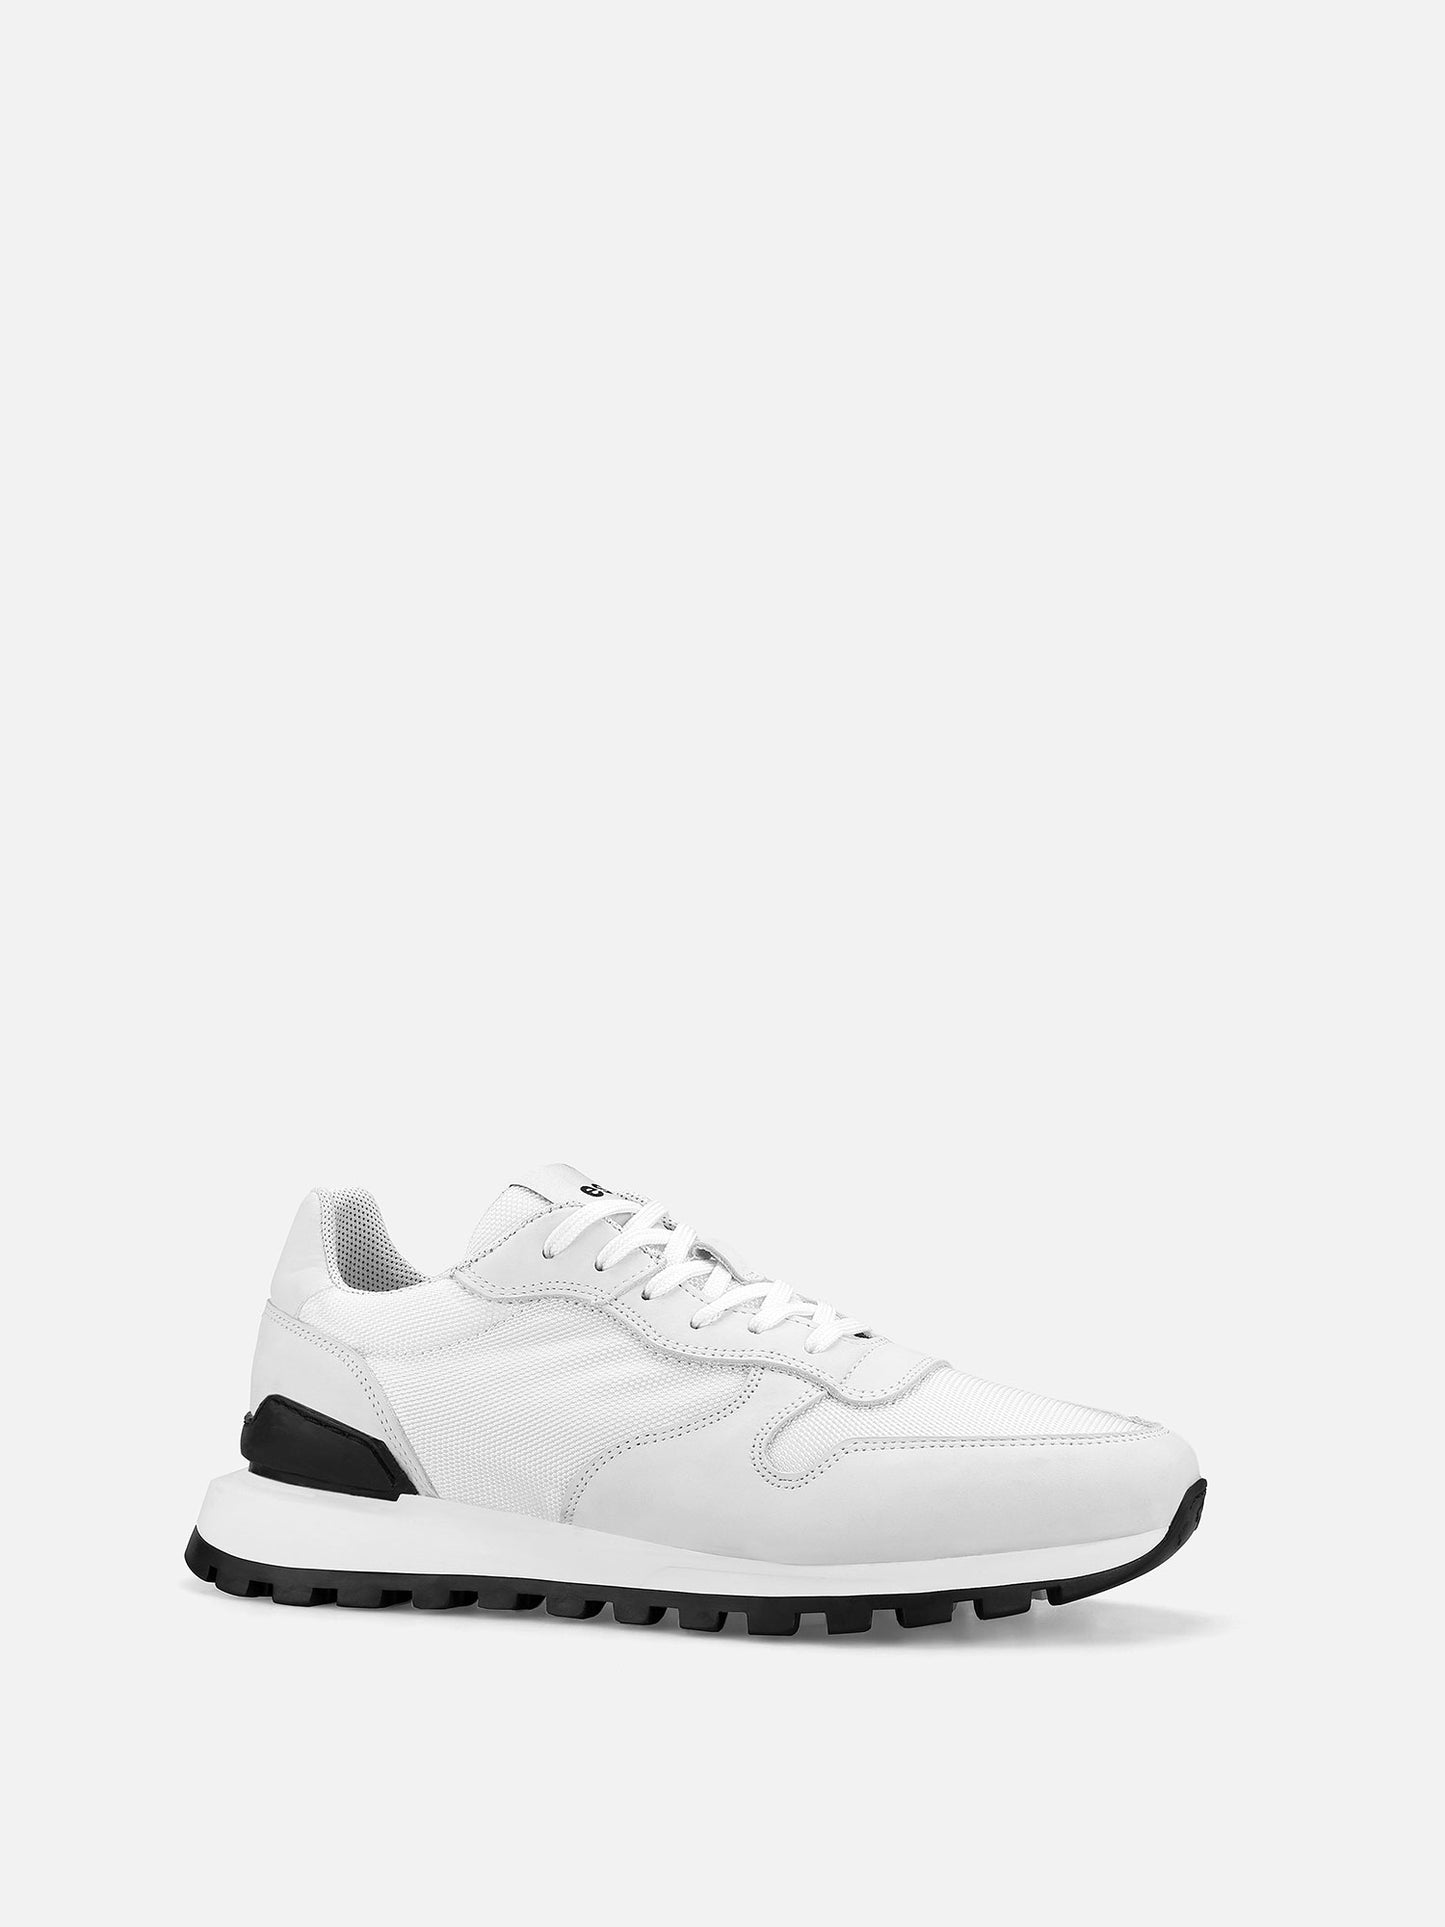 VAN Running Sneakers - White